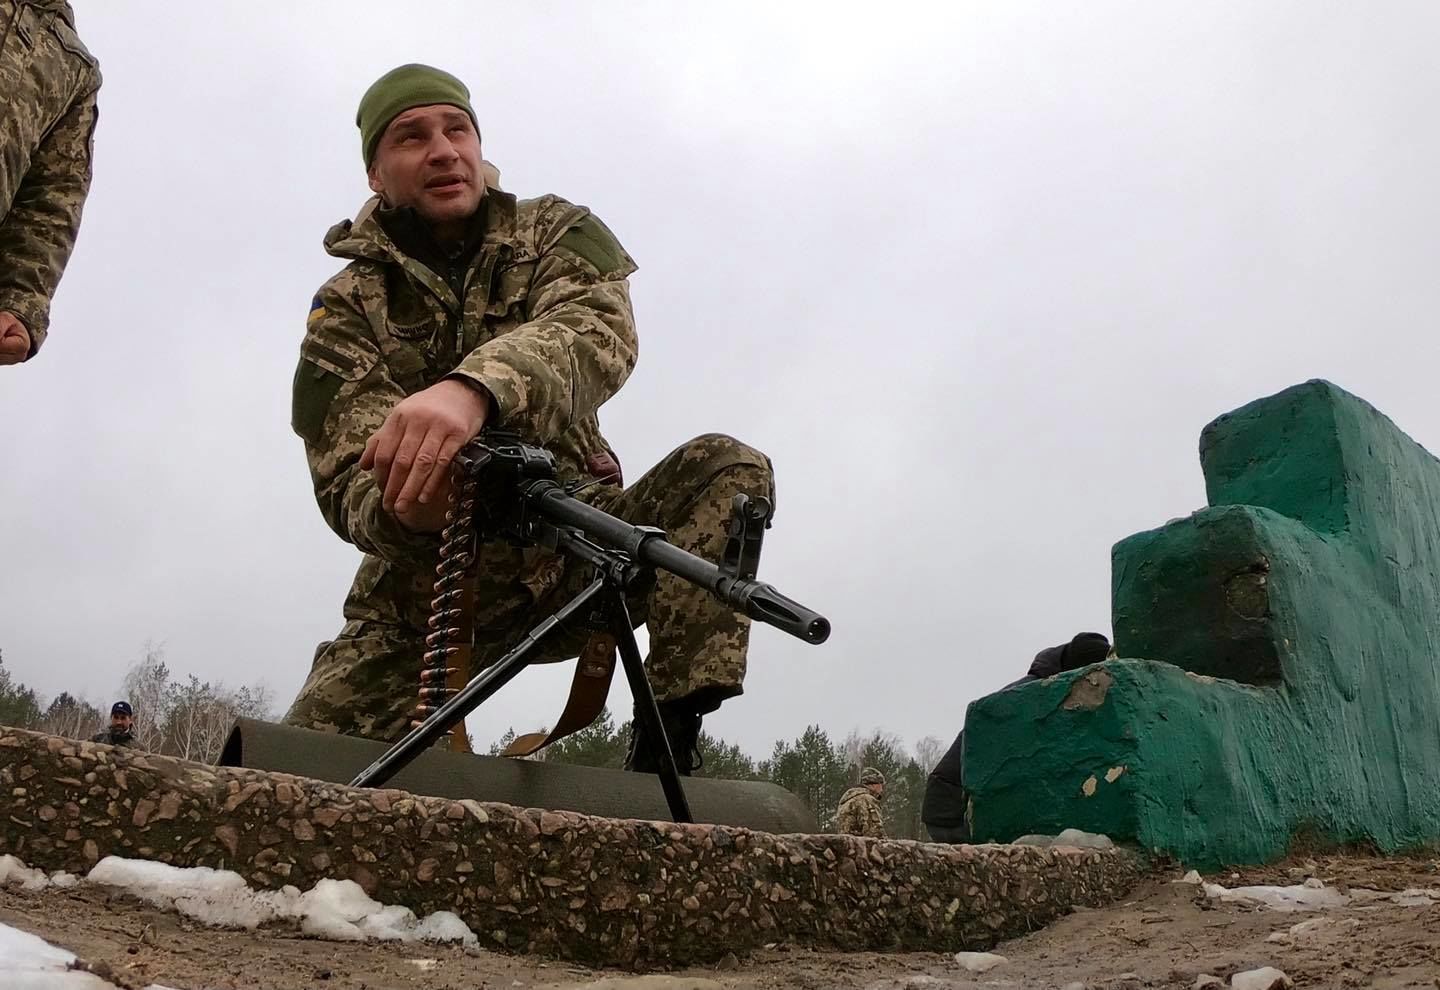 Отступать некуда - позади Киев: Виталий Кличко с гранатой бросился под танк